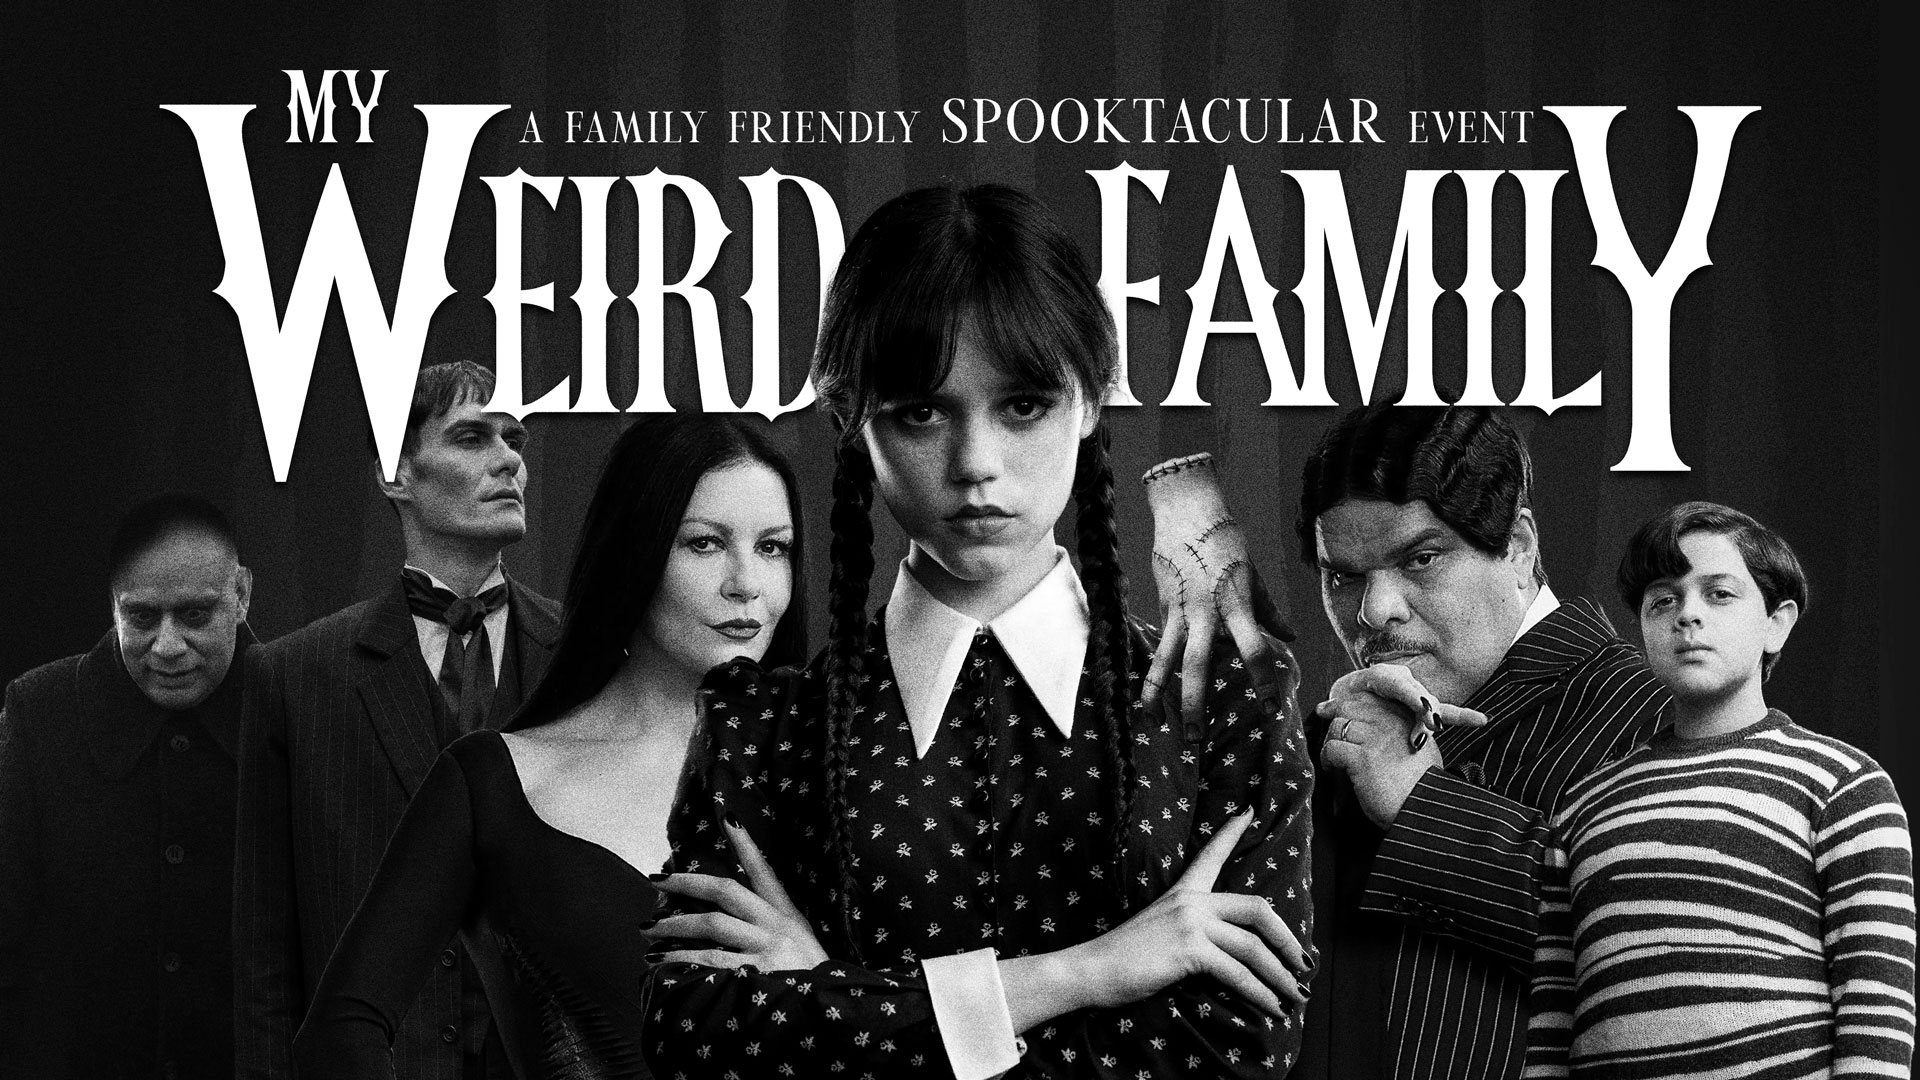  My Weird Family - Spooktacular 